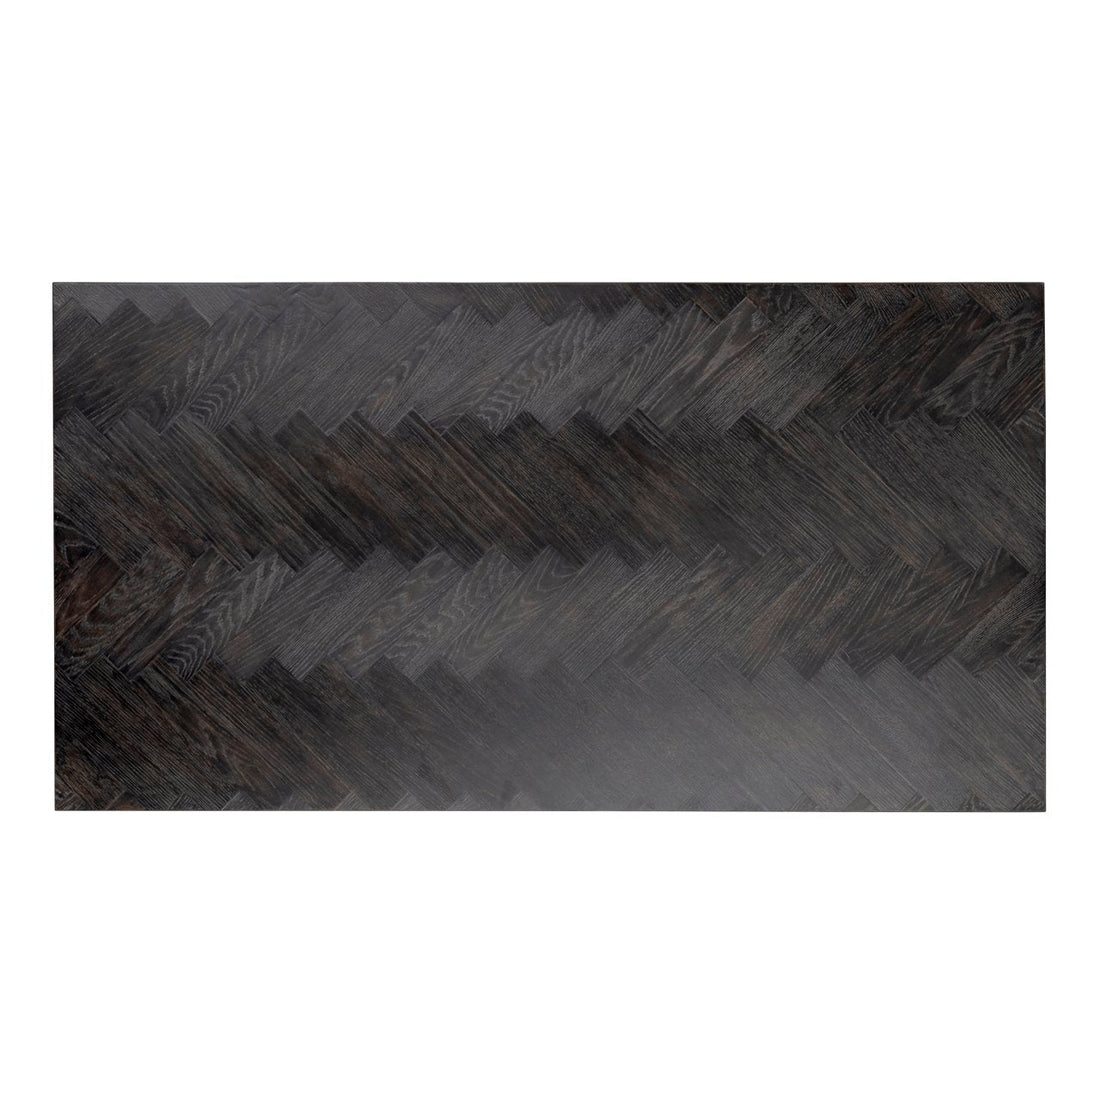 150x80 cm blok salontafel met rustiek zwart eiken en zilveren frame.